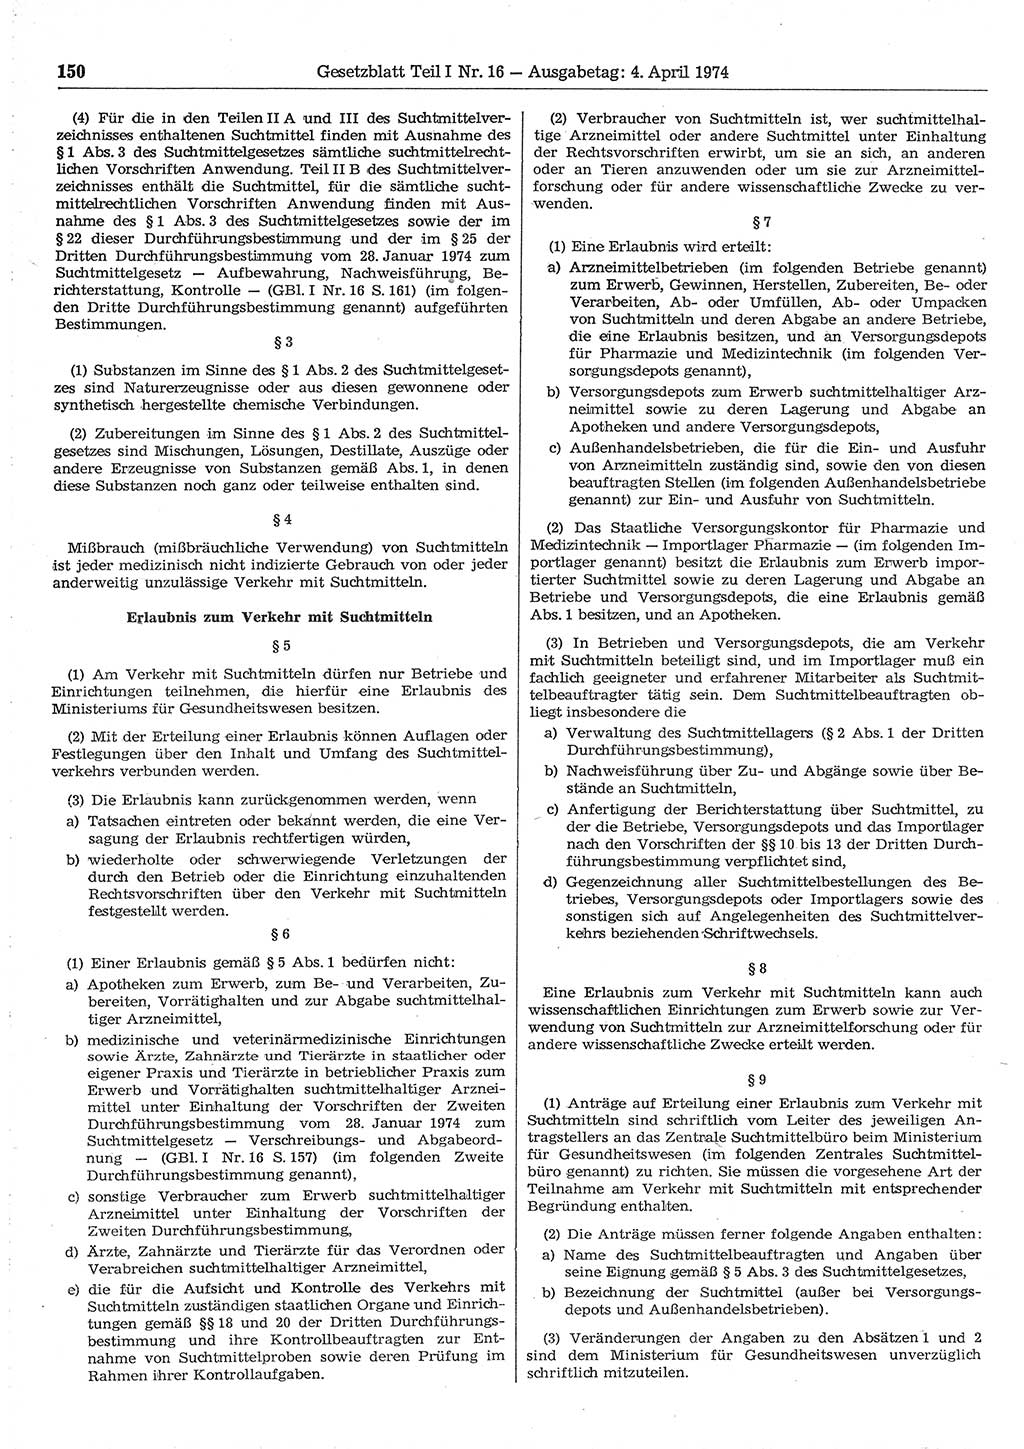 Gesetzblatt (GBl.) der Deutschen Demokratischen Republik (DDR) Teil Ⅰ 1974, Seite 150 (GBl. DDR Ⅰ 1974, S. 150)